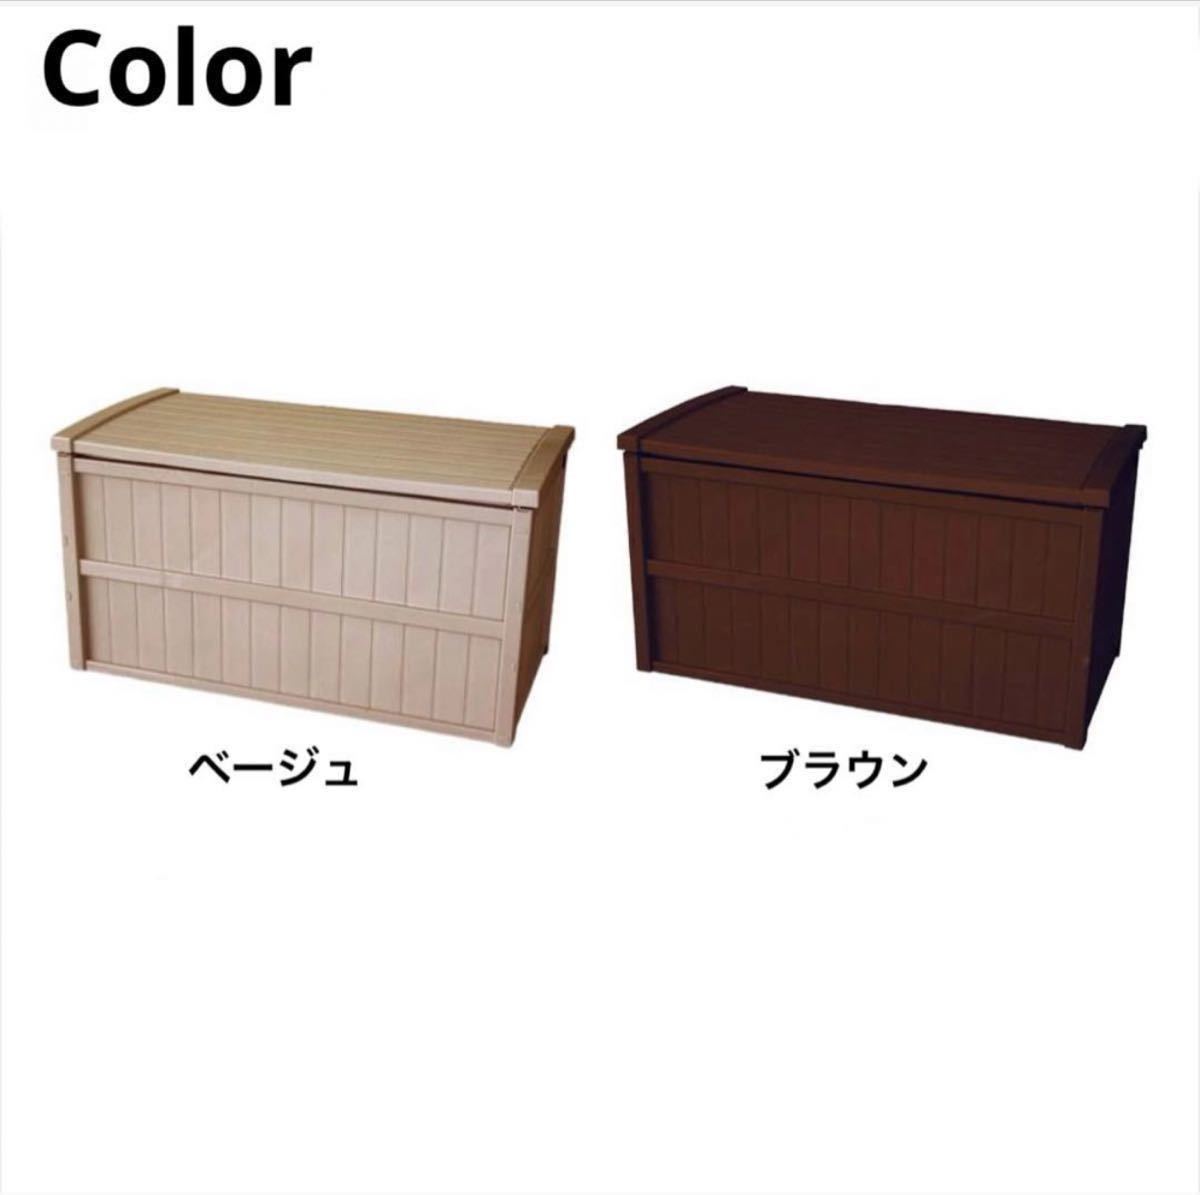 [ новый товар не использовался ] большая вместимость шкаф 200L сборка тип наружный место хранения box сделано в Японии 